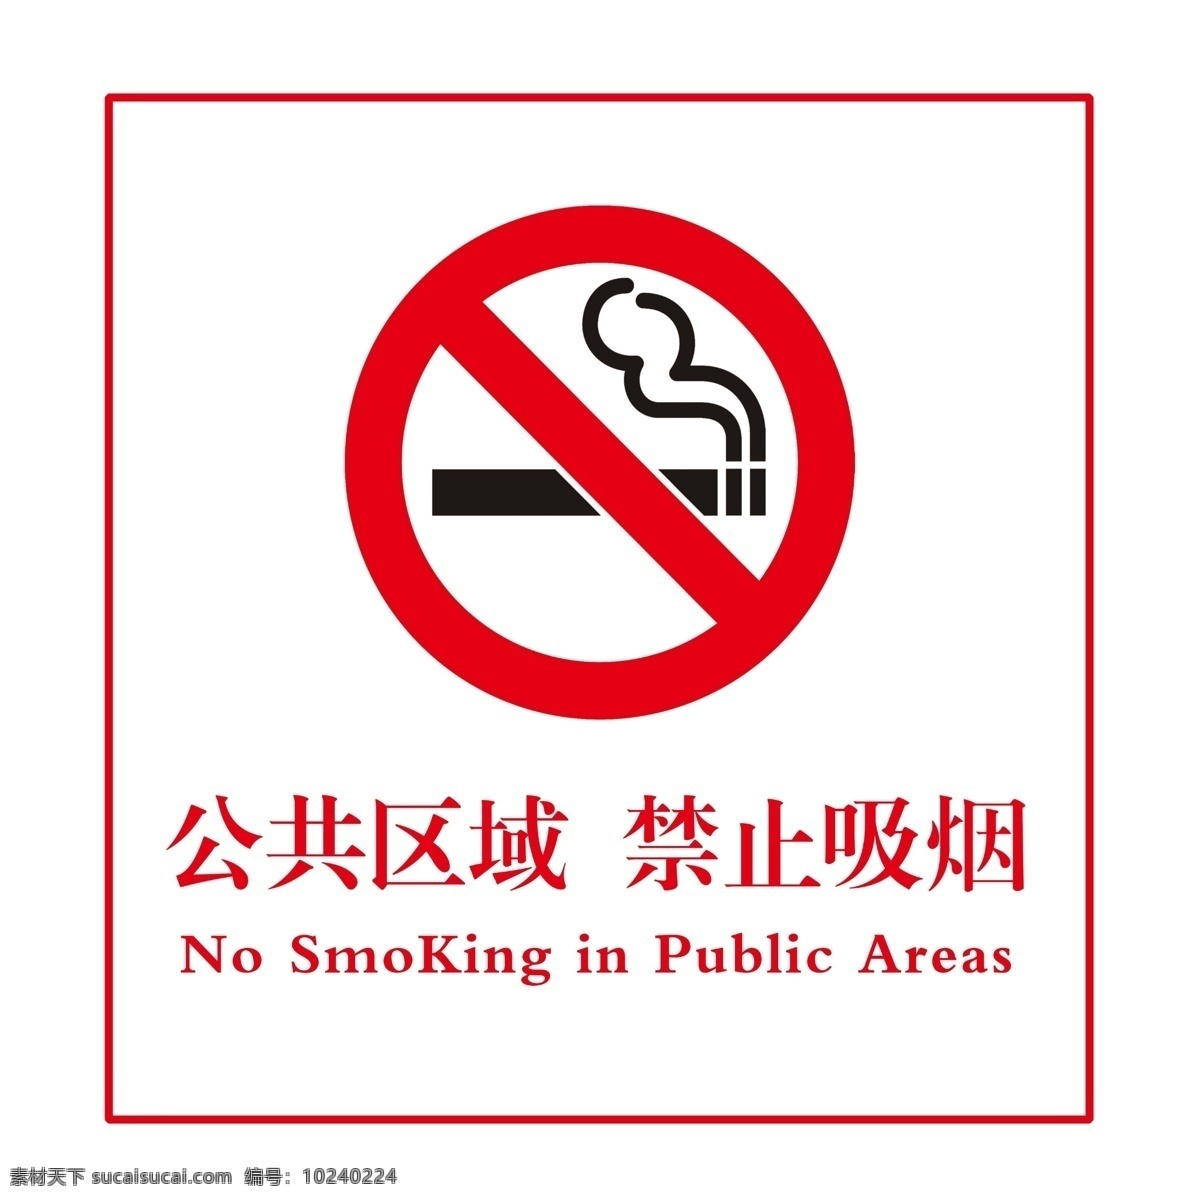 公共区域 禁止吸烟 禁烟标志 严禁吸烟 禁烟标识 红色警示标志 公共禁止吸烟 展板